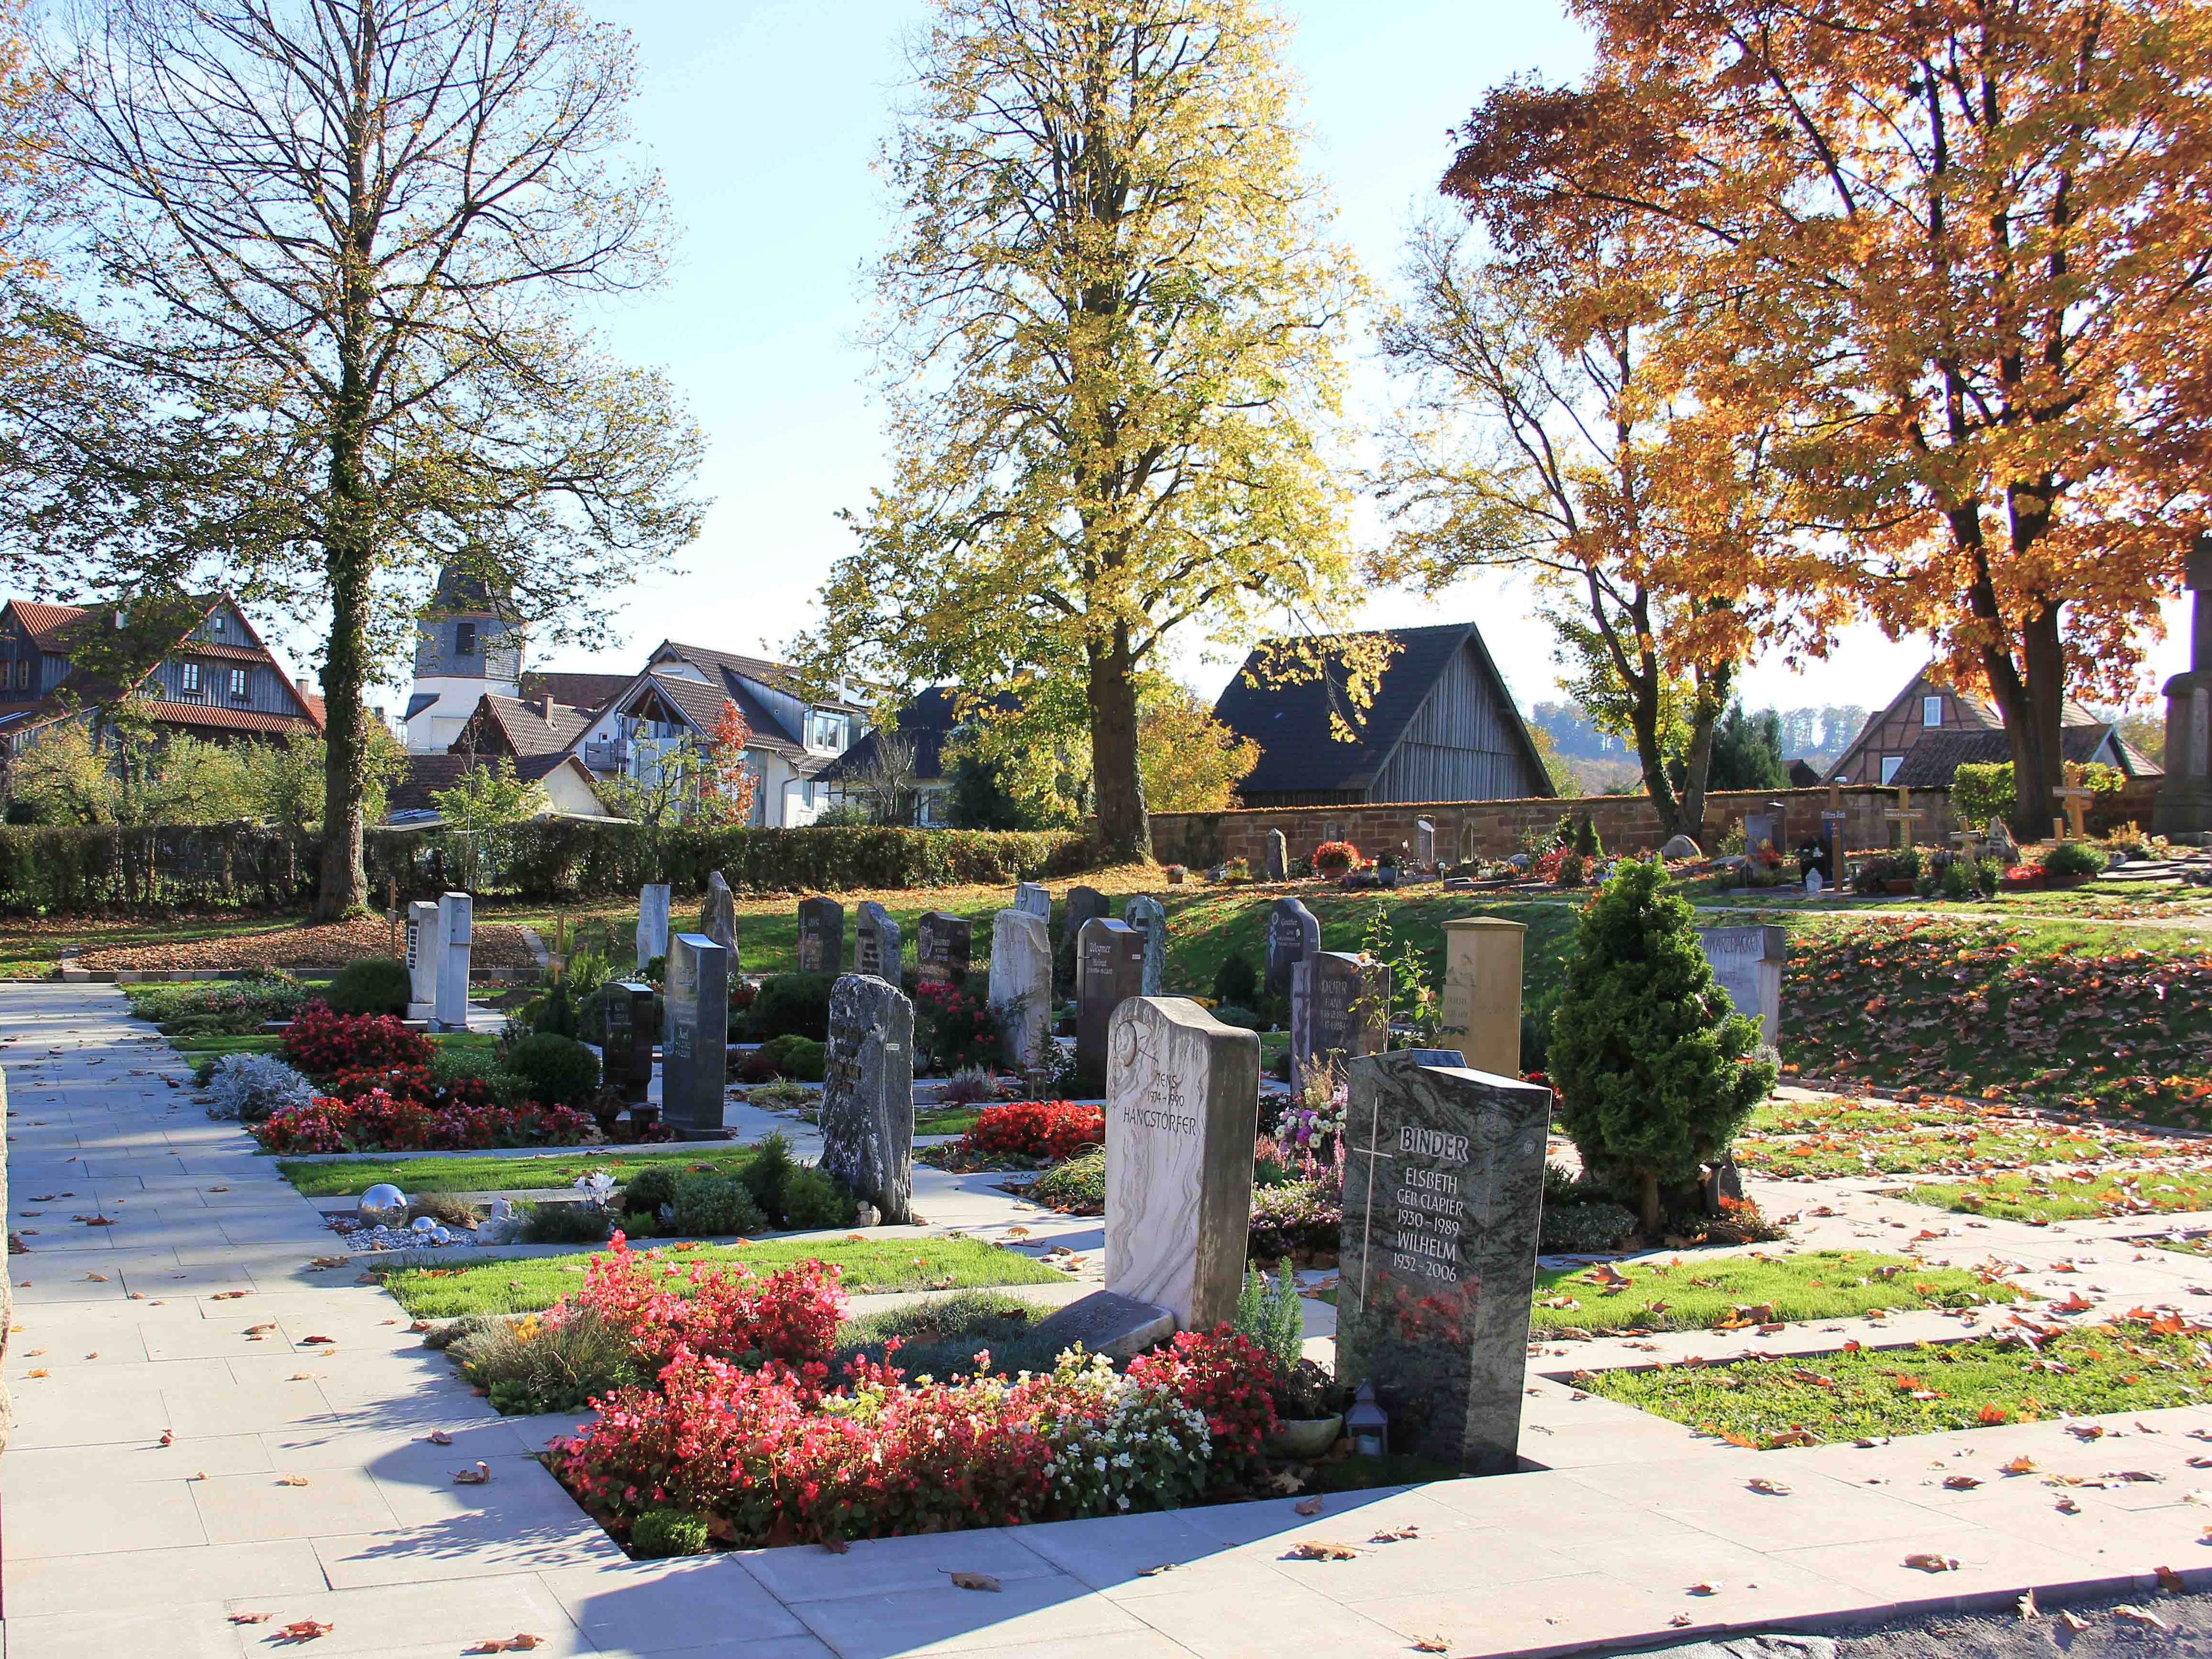 Blumenreich bepflanzte Erdbestattungsgräber mit Grabsteinen, im Hintergrund ist eine Dorfsilhouette zu erkennen